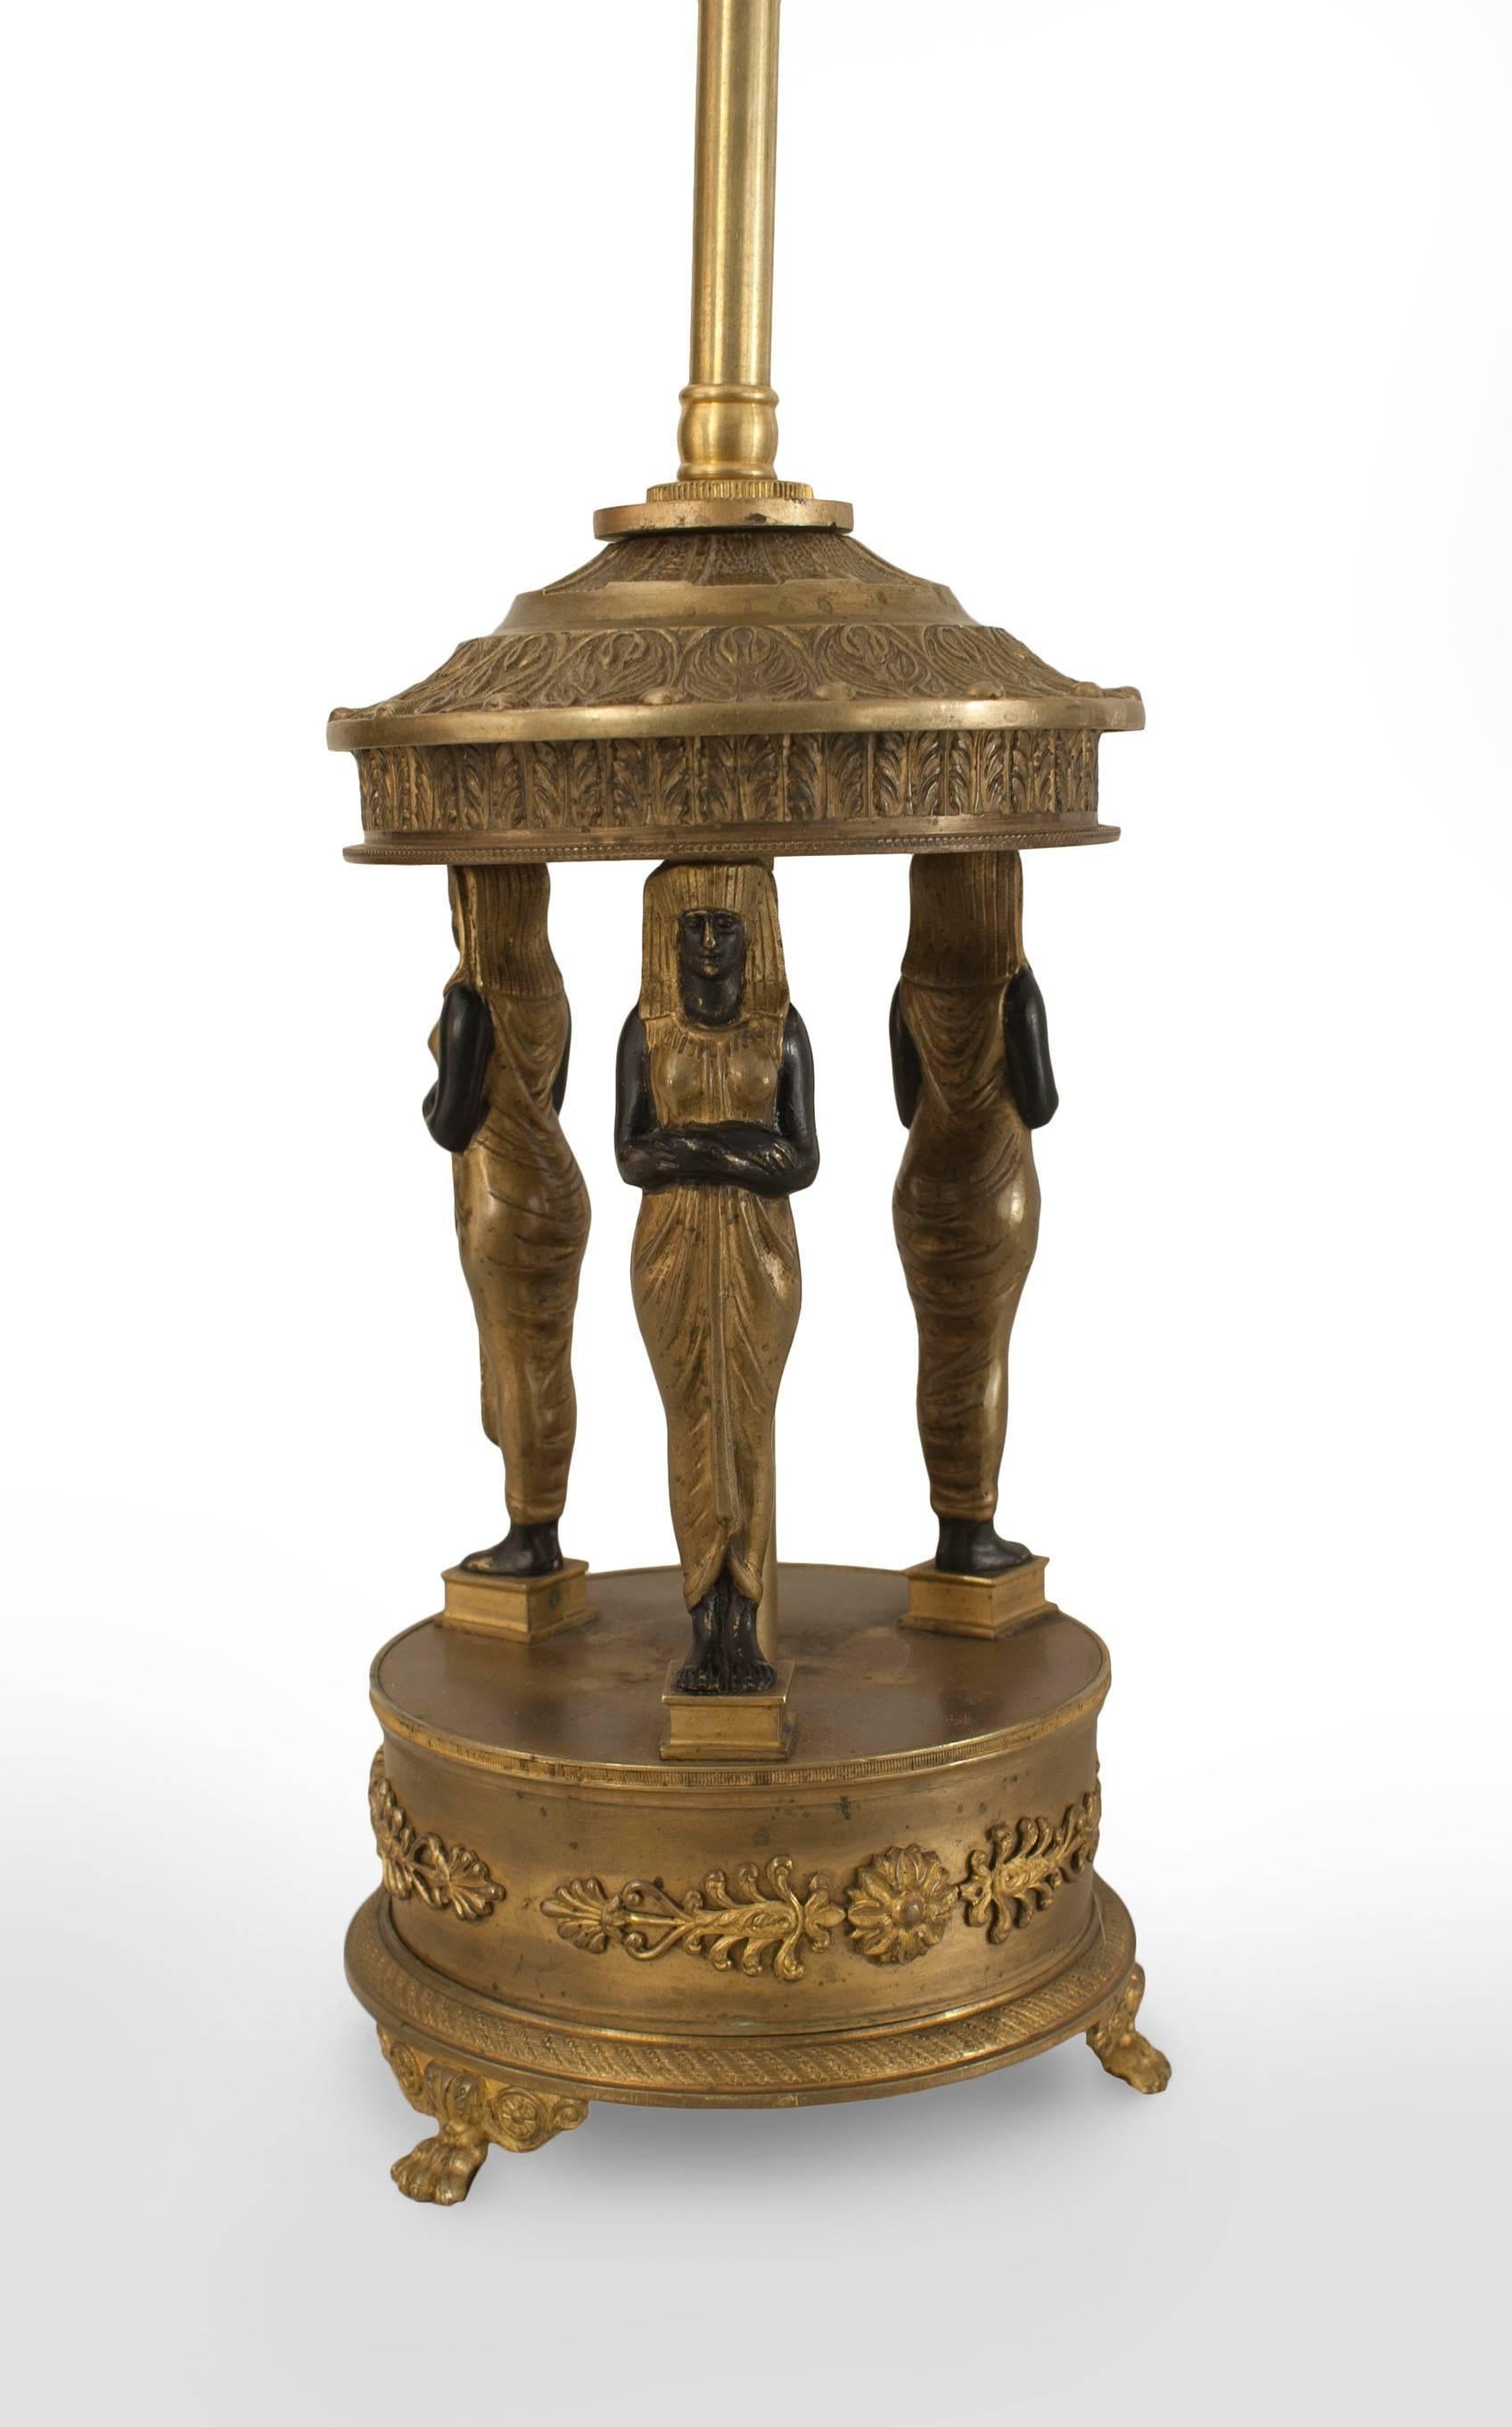 Lampe en bronze de style Empire français (19e siècle) avec 3 figures égyptiennes ébonisées et dorées reposant sur une base ronde.
